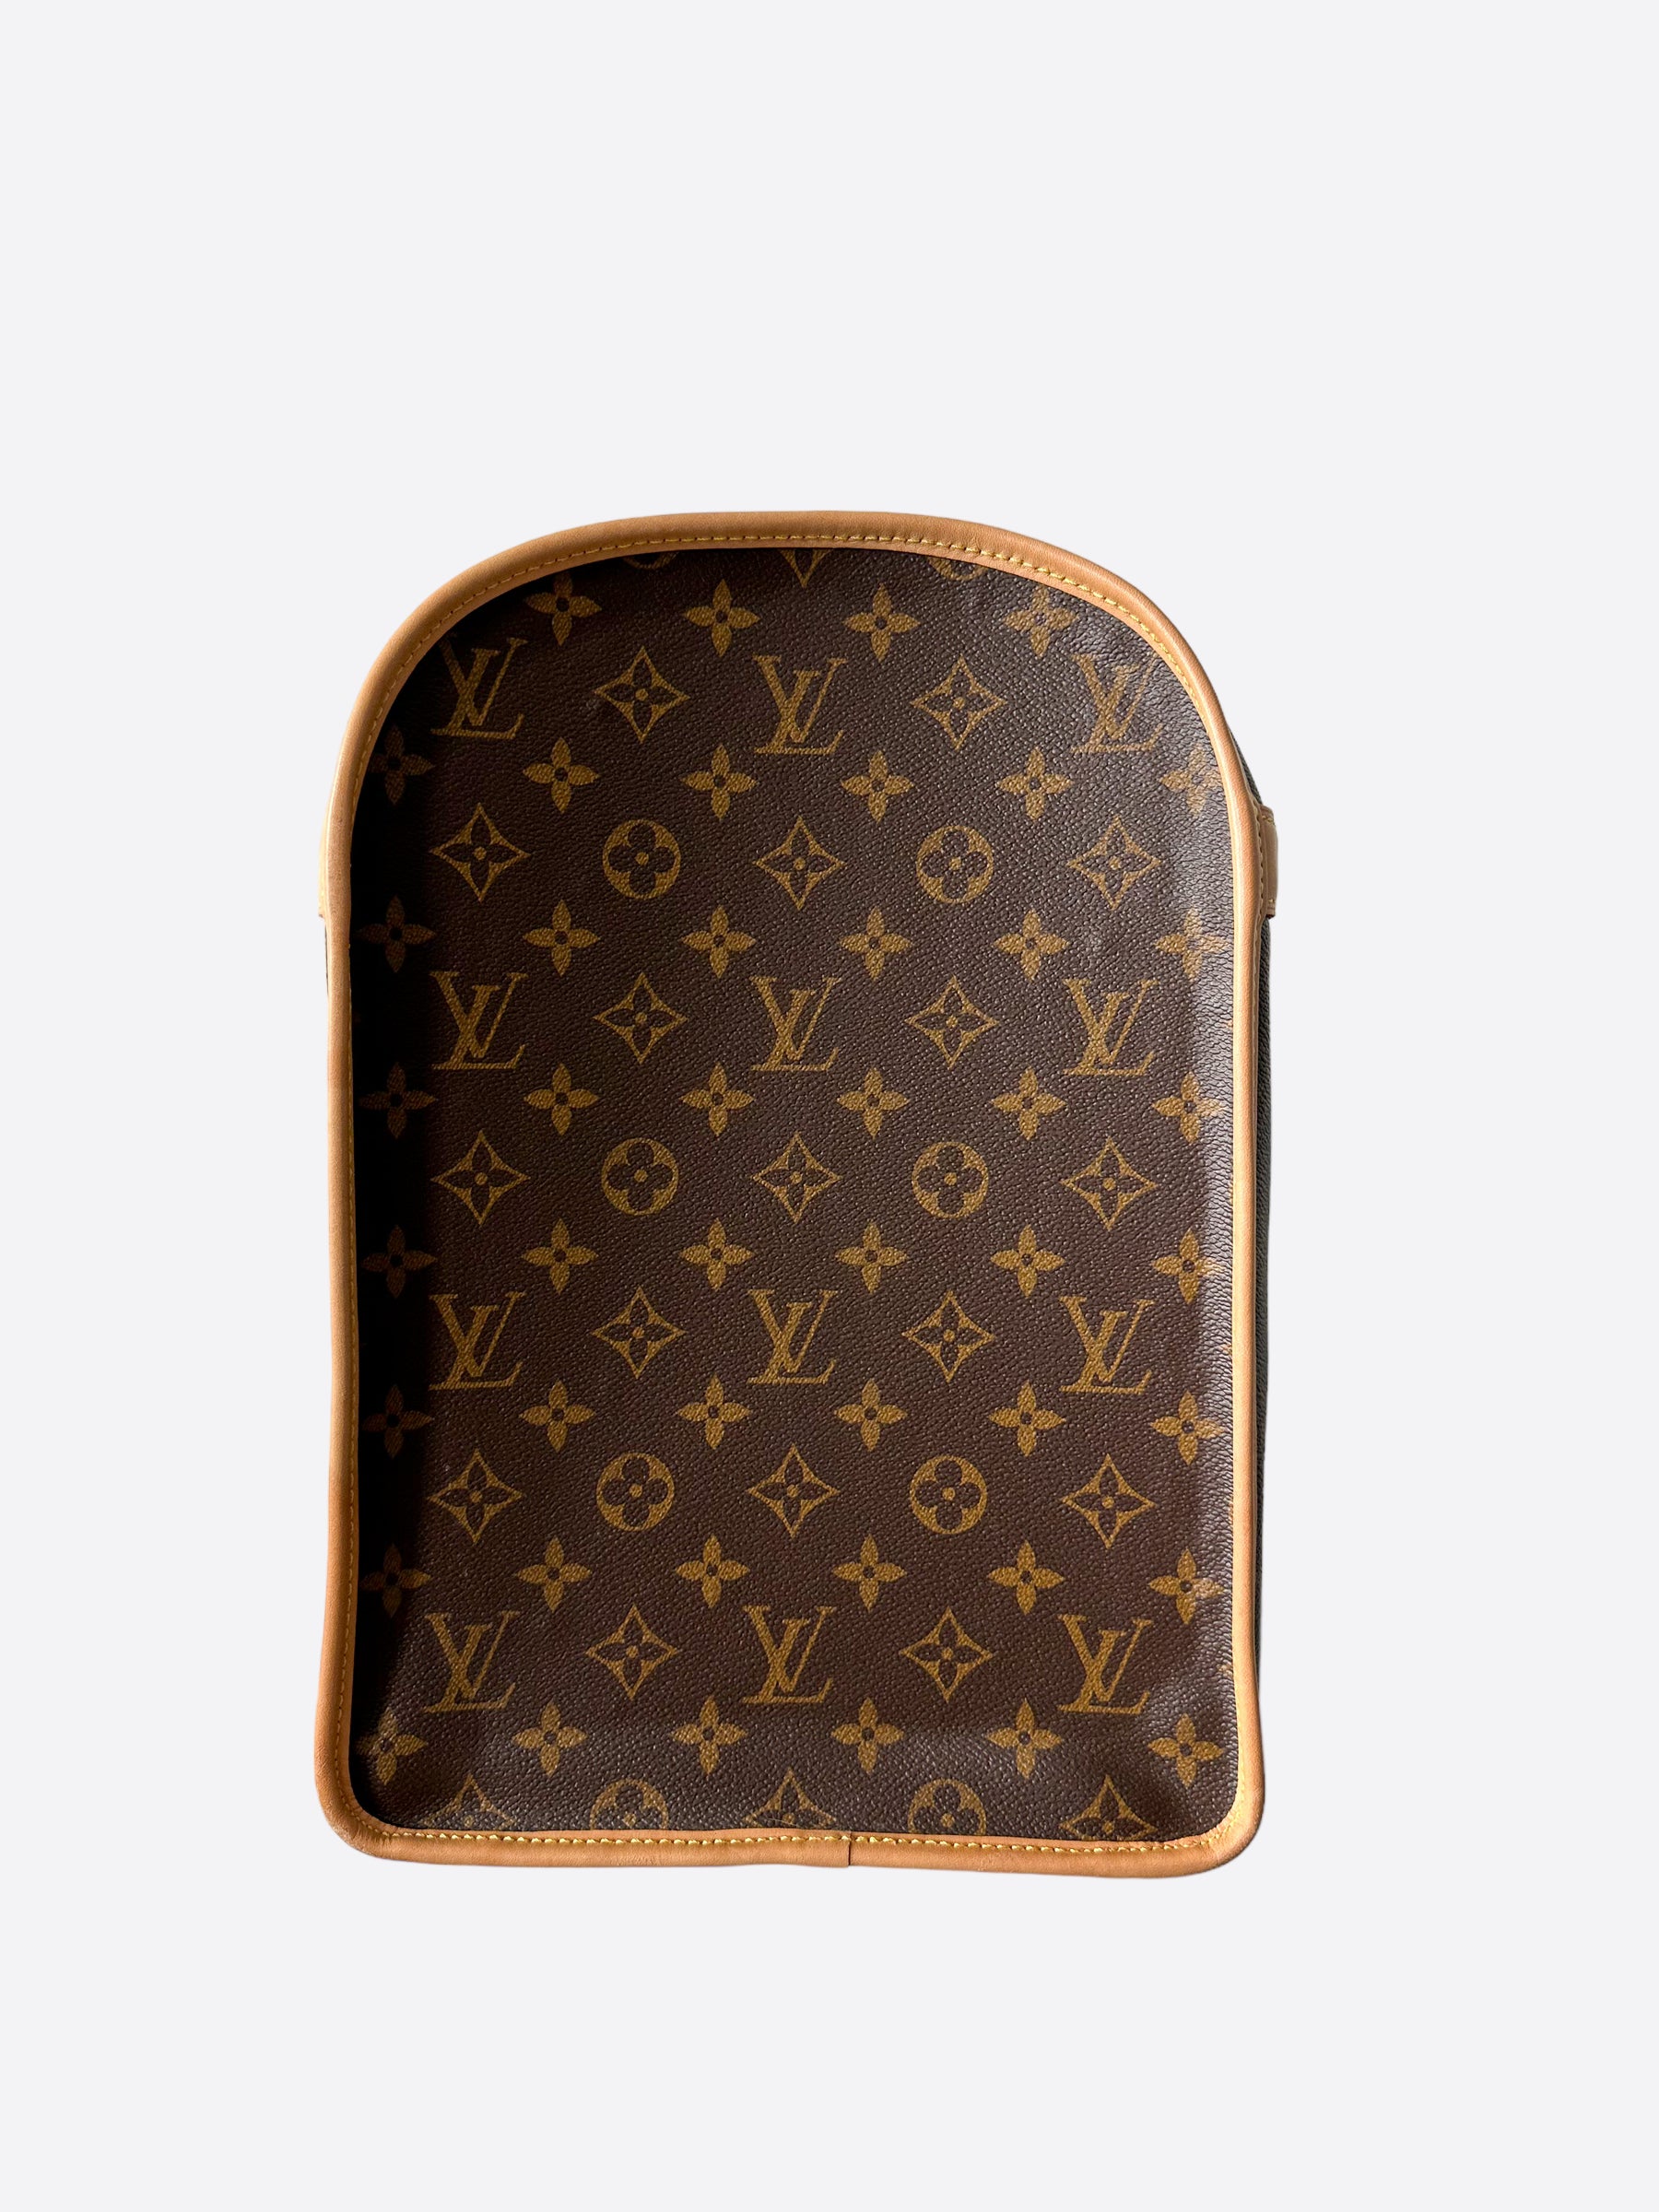 Shop Louis Vuitton MONOGRAM Dog bag (M45662) by iRodori03